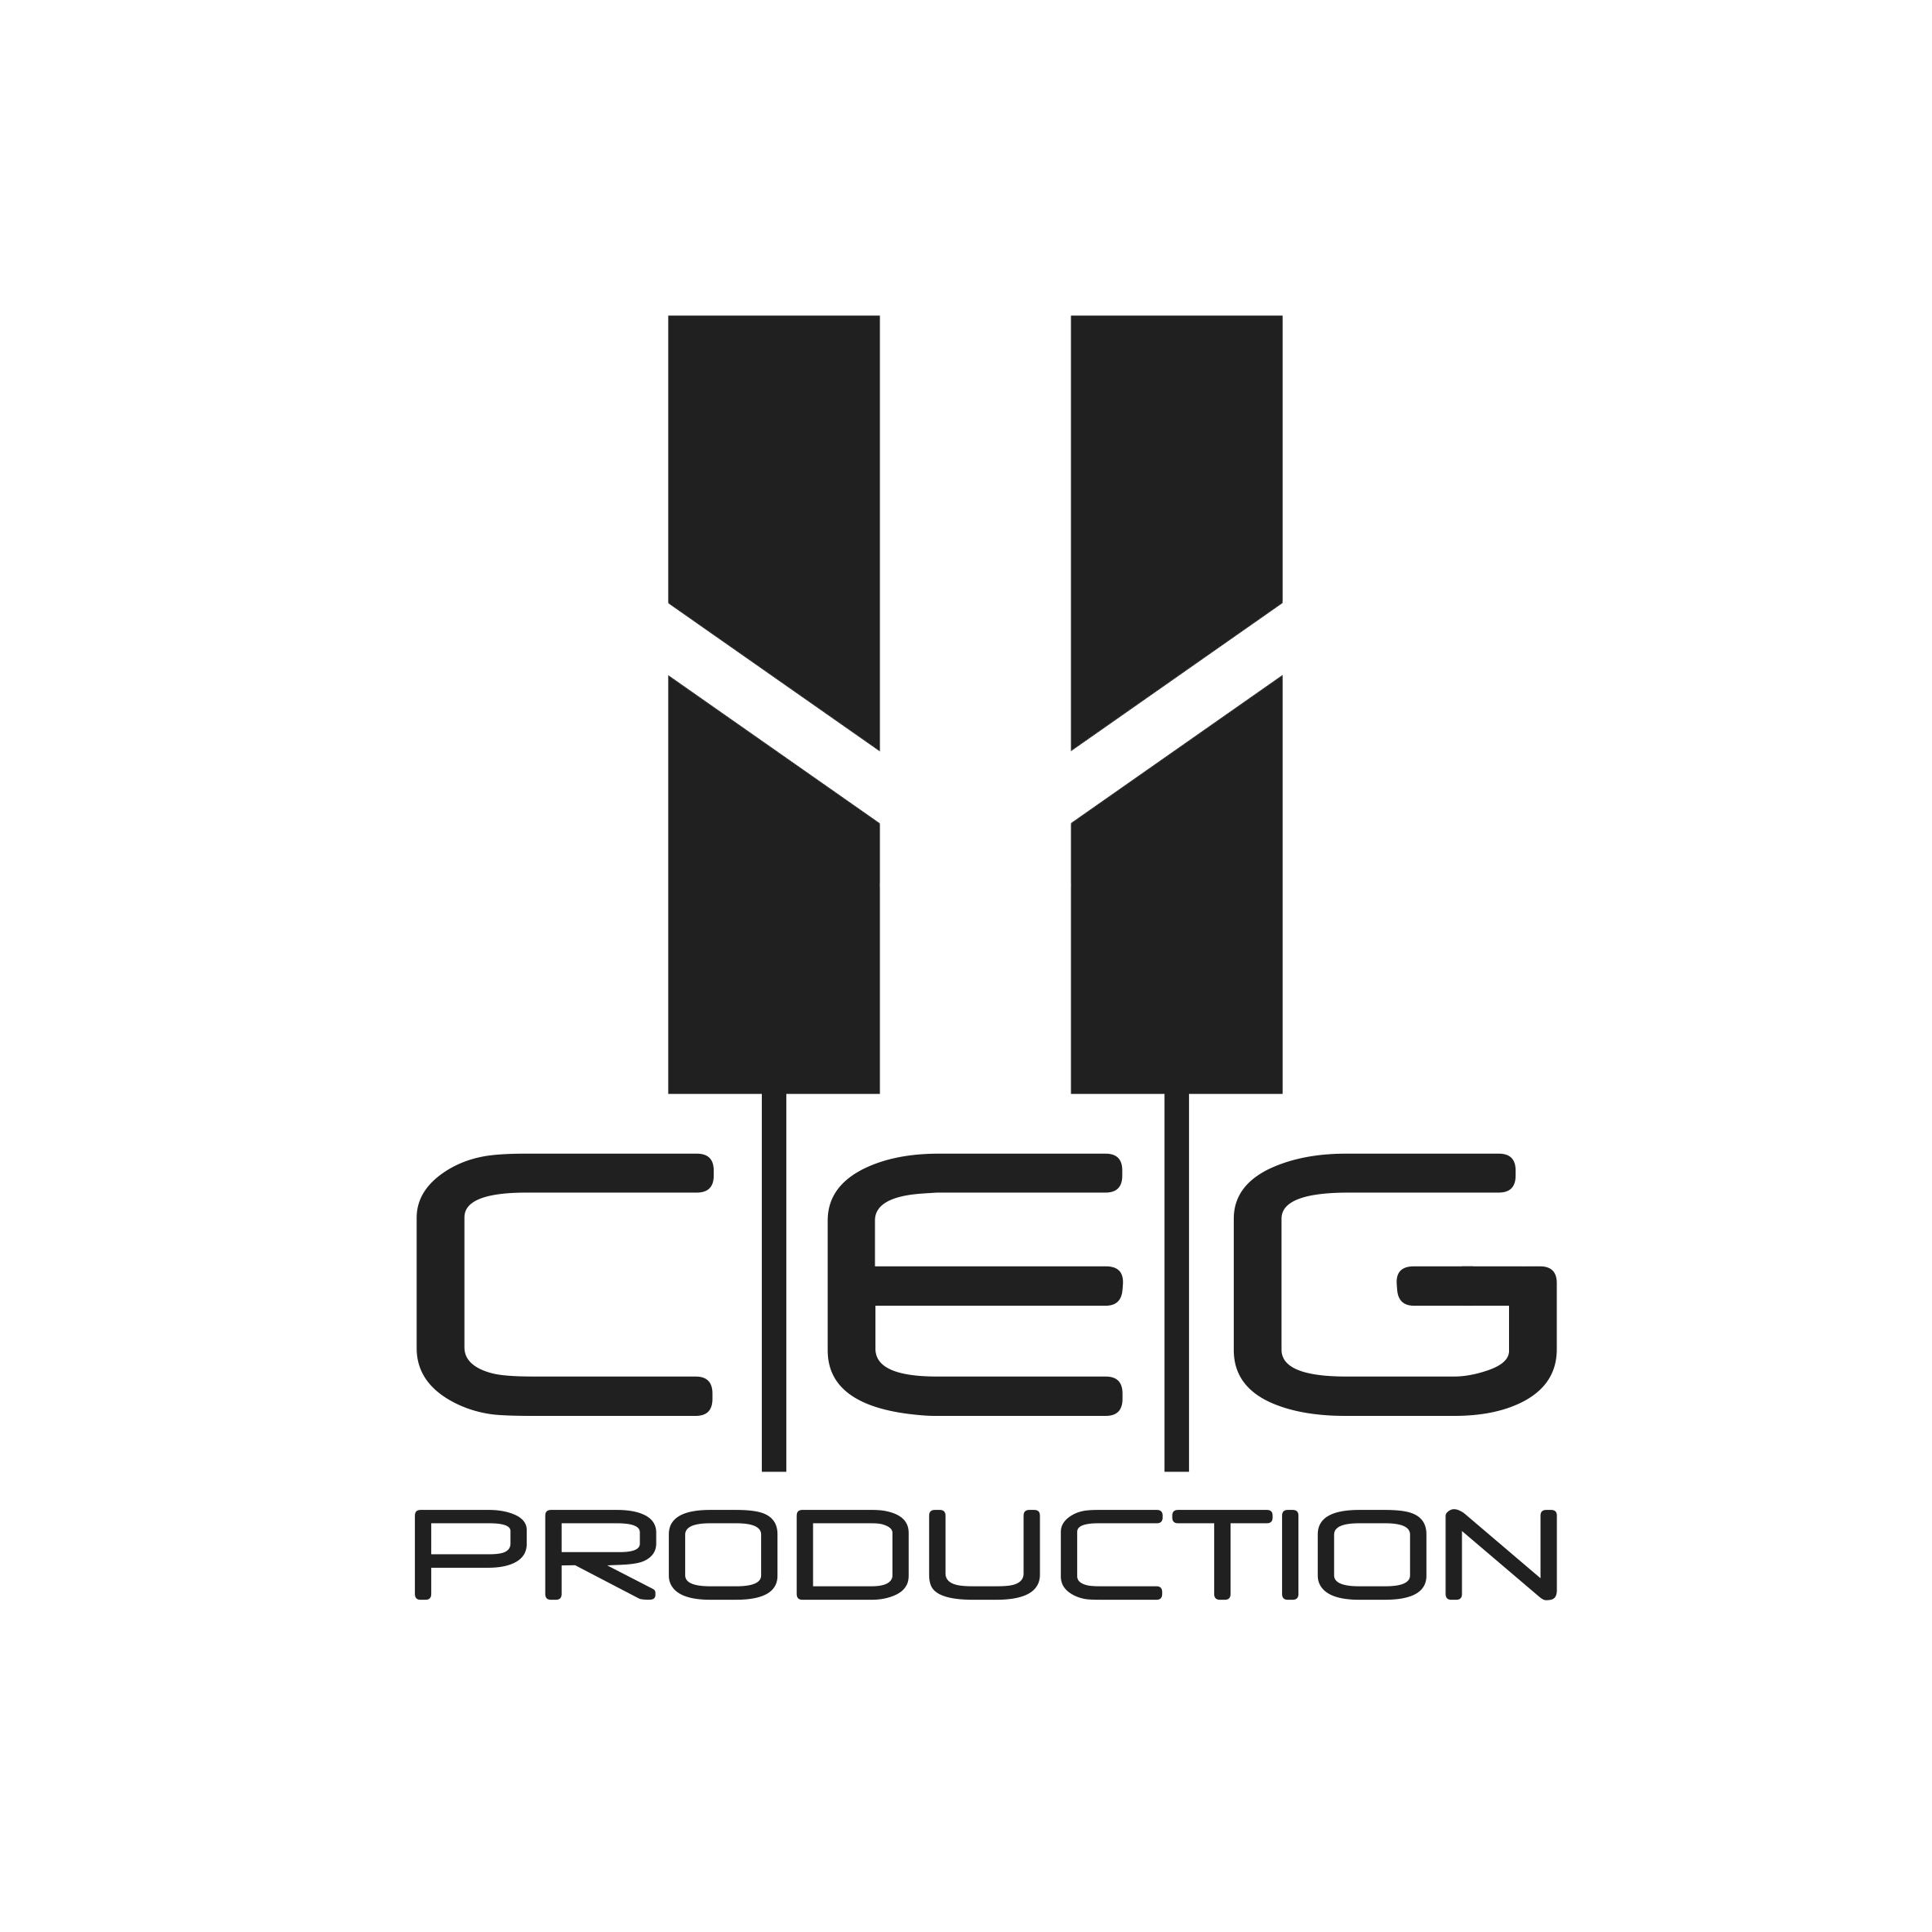 CEG PRODUCTION